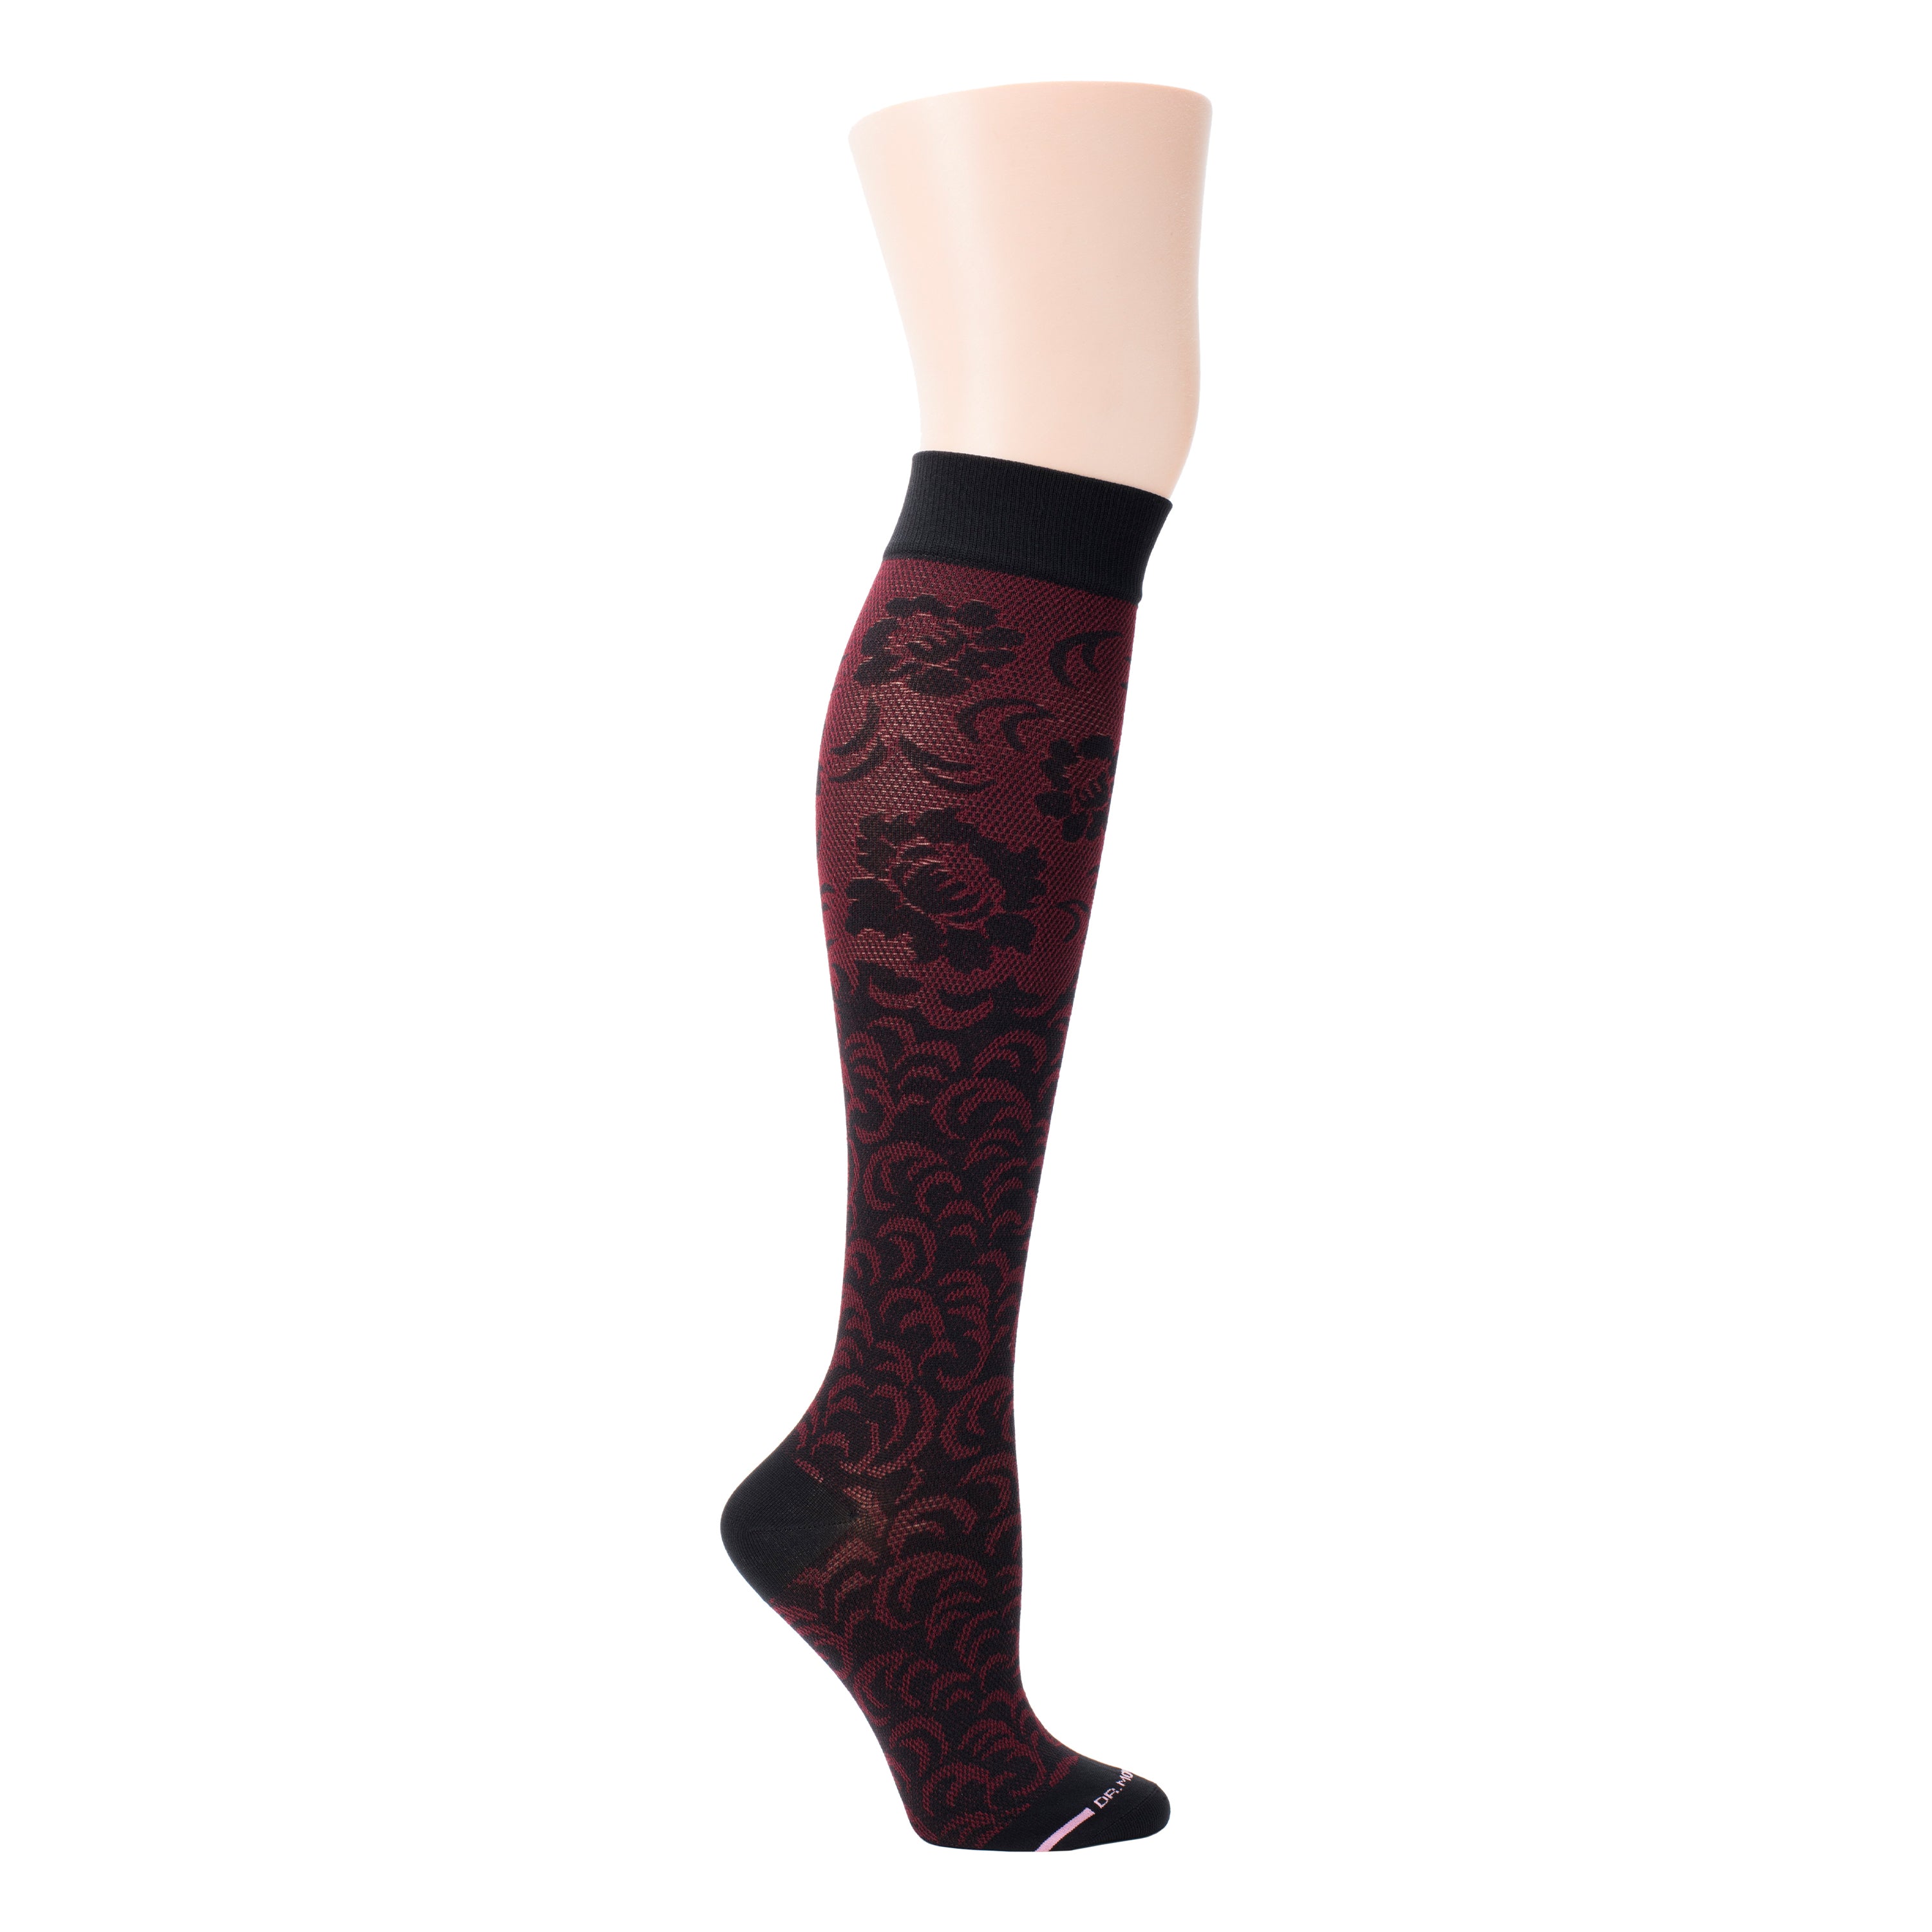 Damask Floral | Knee-High Compression Socks For Women